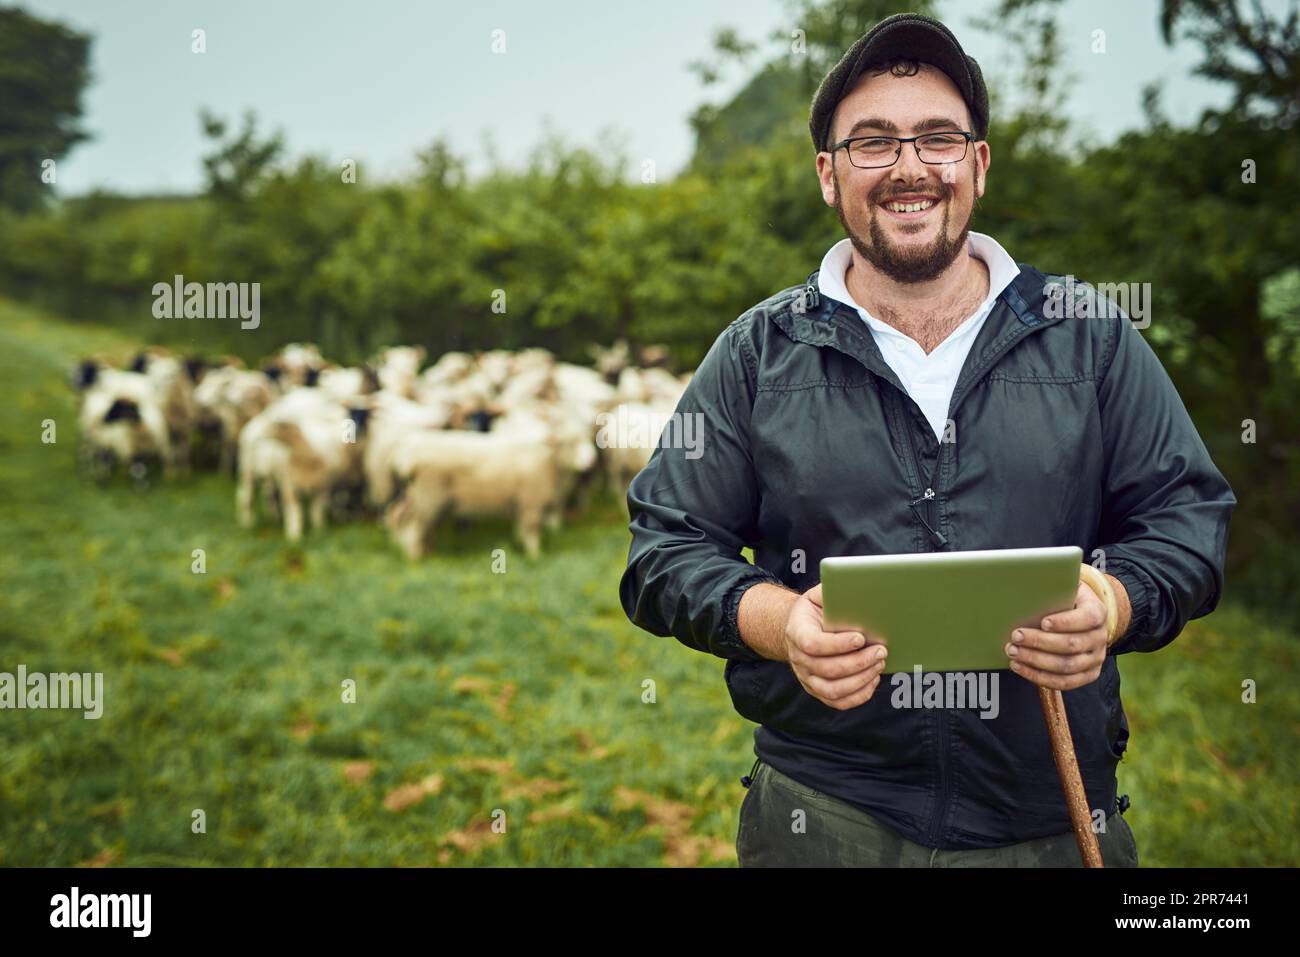 Manchmal muss ich die Tafel überprüfen. Porträt eines fröhlichen jungen Landwirts, der mit einem digitalen Tablet und einem Stock steht, während eine Schafherde im Hintergrund grast. Stockfoto